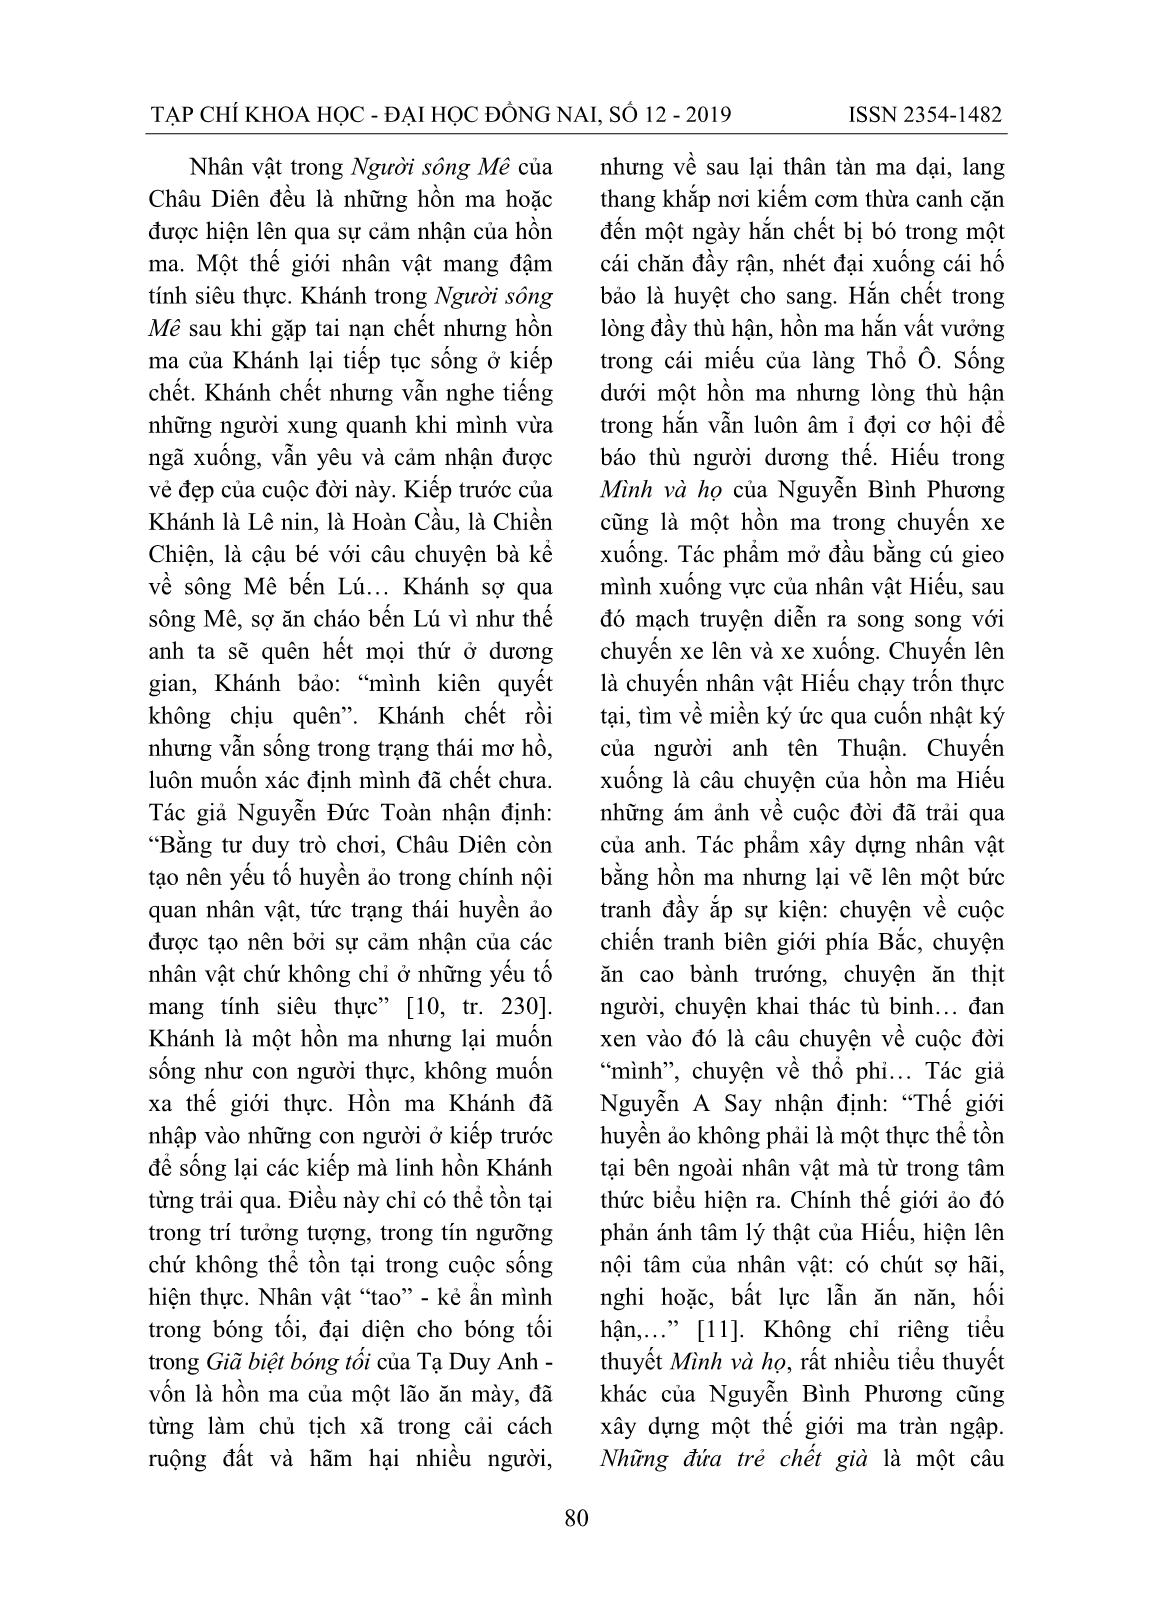 Nghệ thuật xây dựng nhân vật trong tiểu thuyết Việt Nam đương đại viết theo khuynh hướng hiện thực huyền ảo trang 9